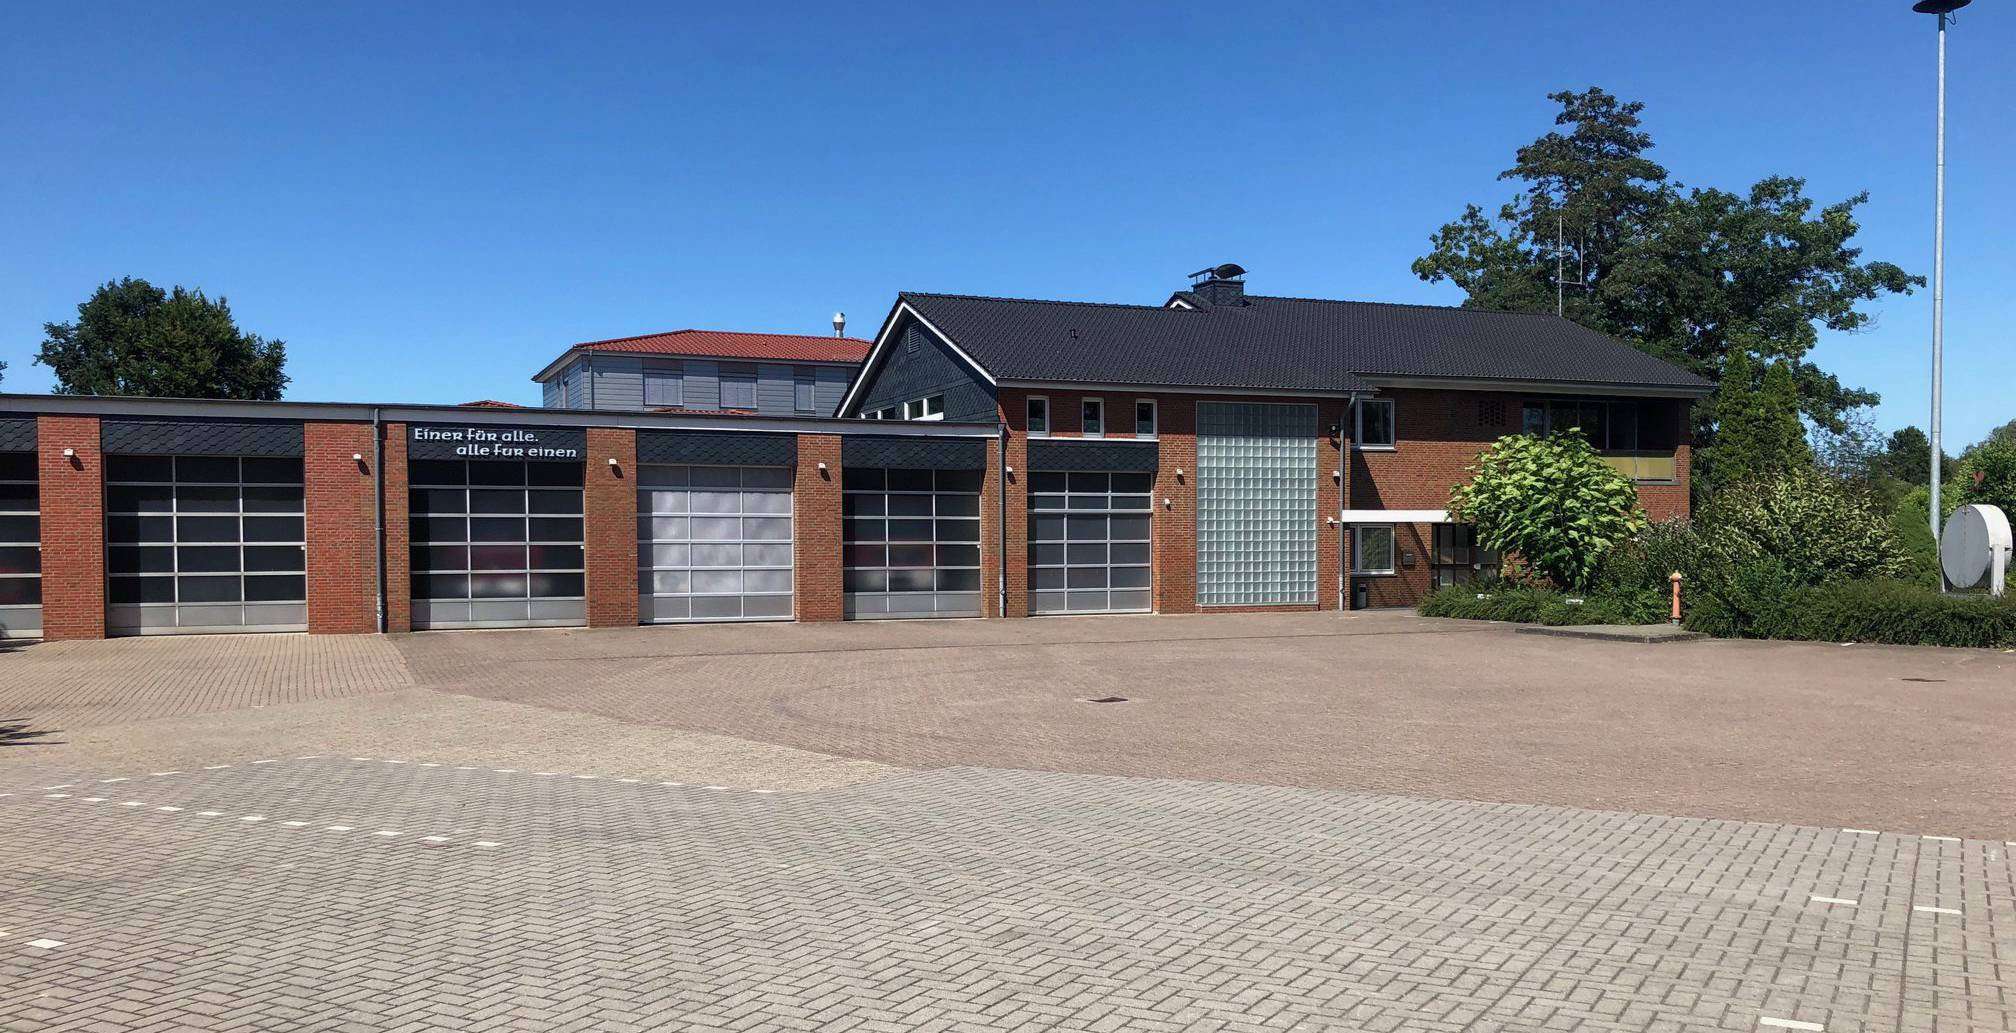 Seit 40 Jahren gibt es das Feuerwehrhaus am Kampweg, nun wurden endlich die sanitären Anlagen erneuert.